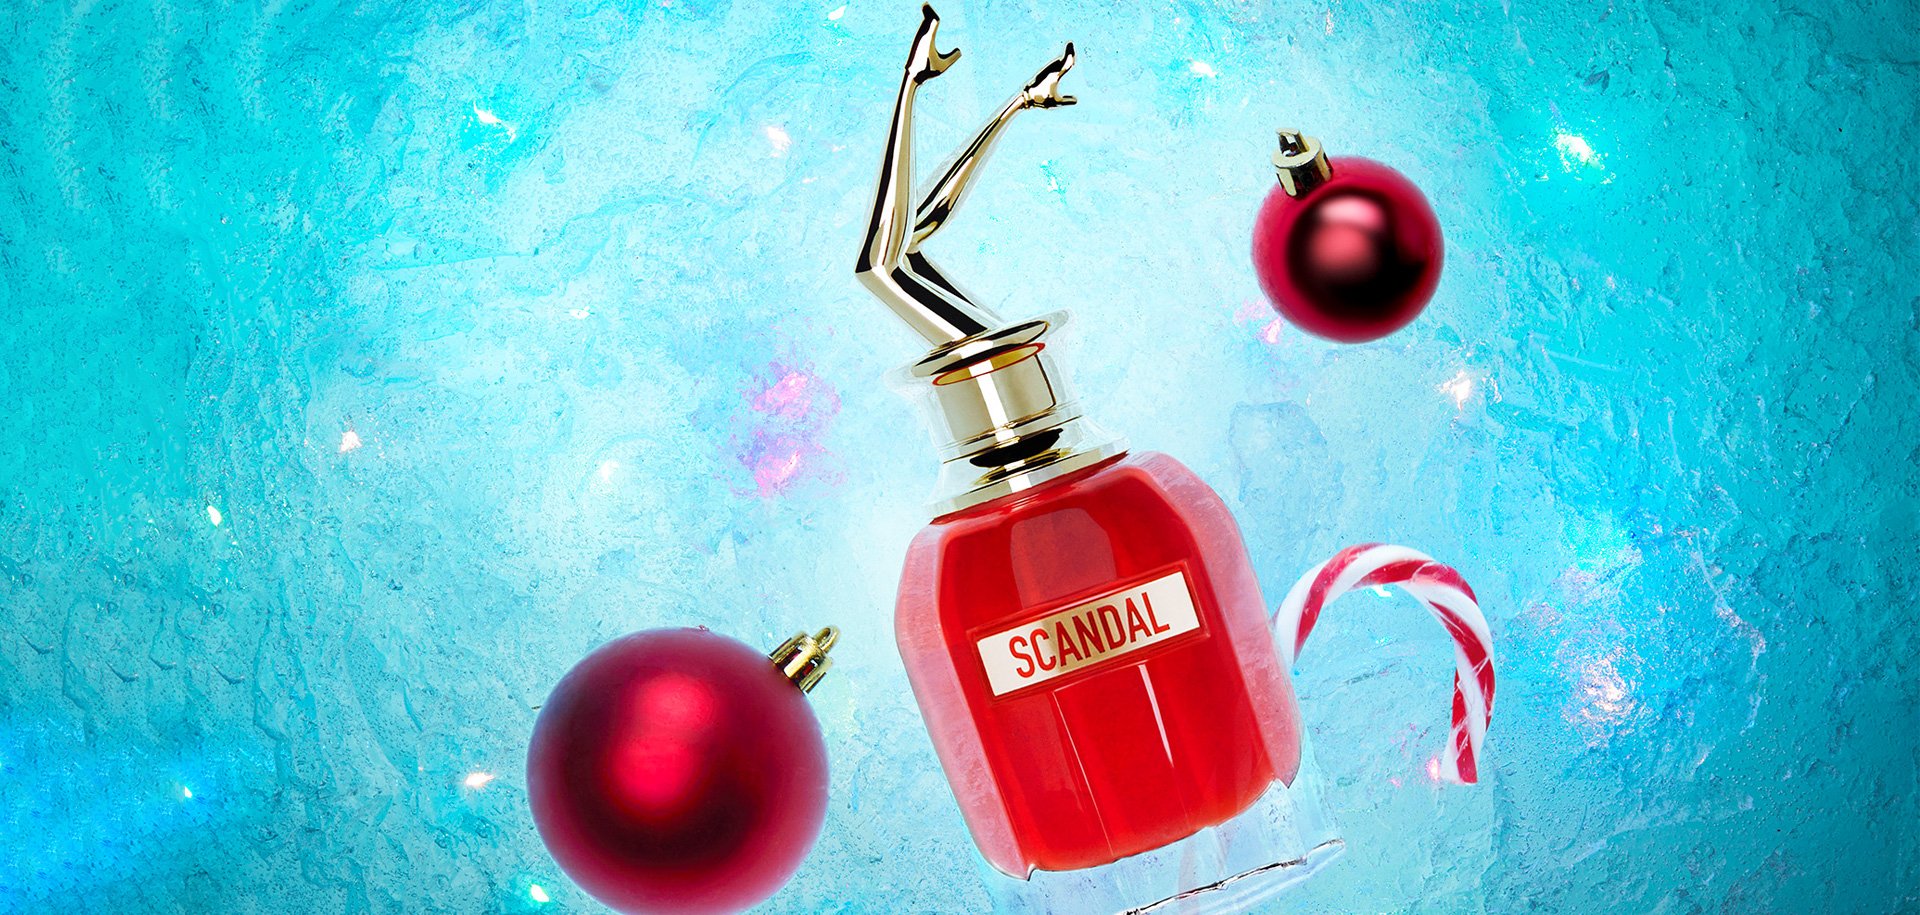 Scandal les parfums christmas